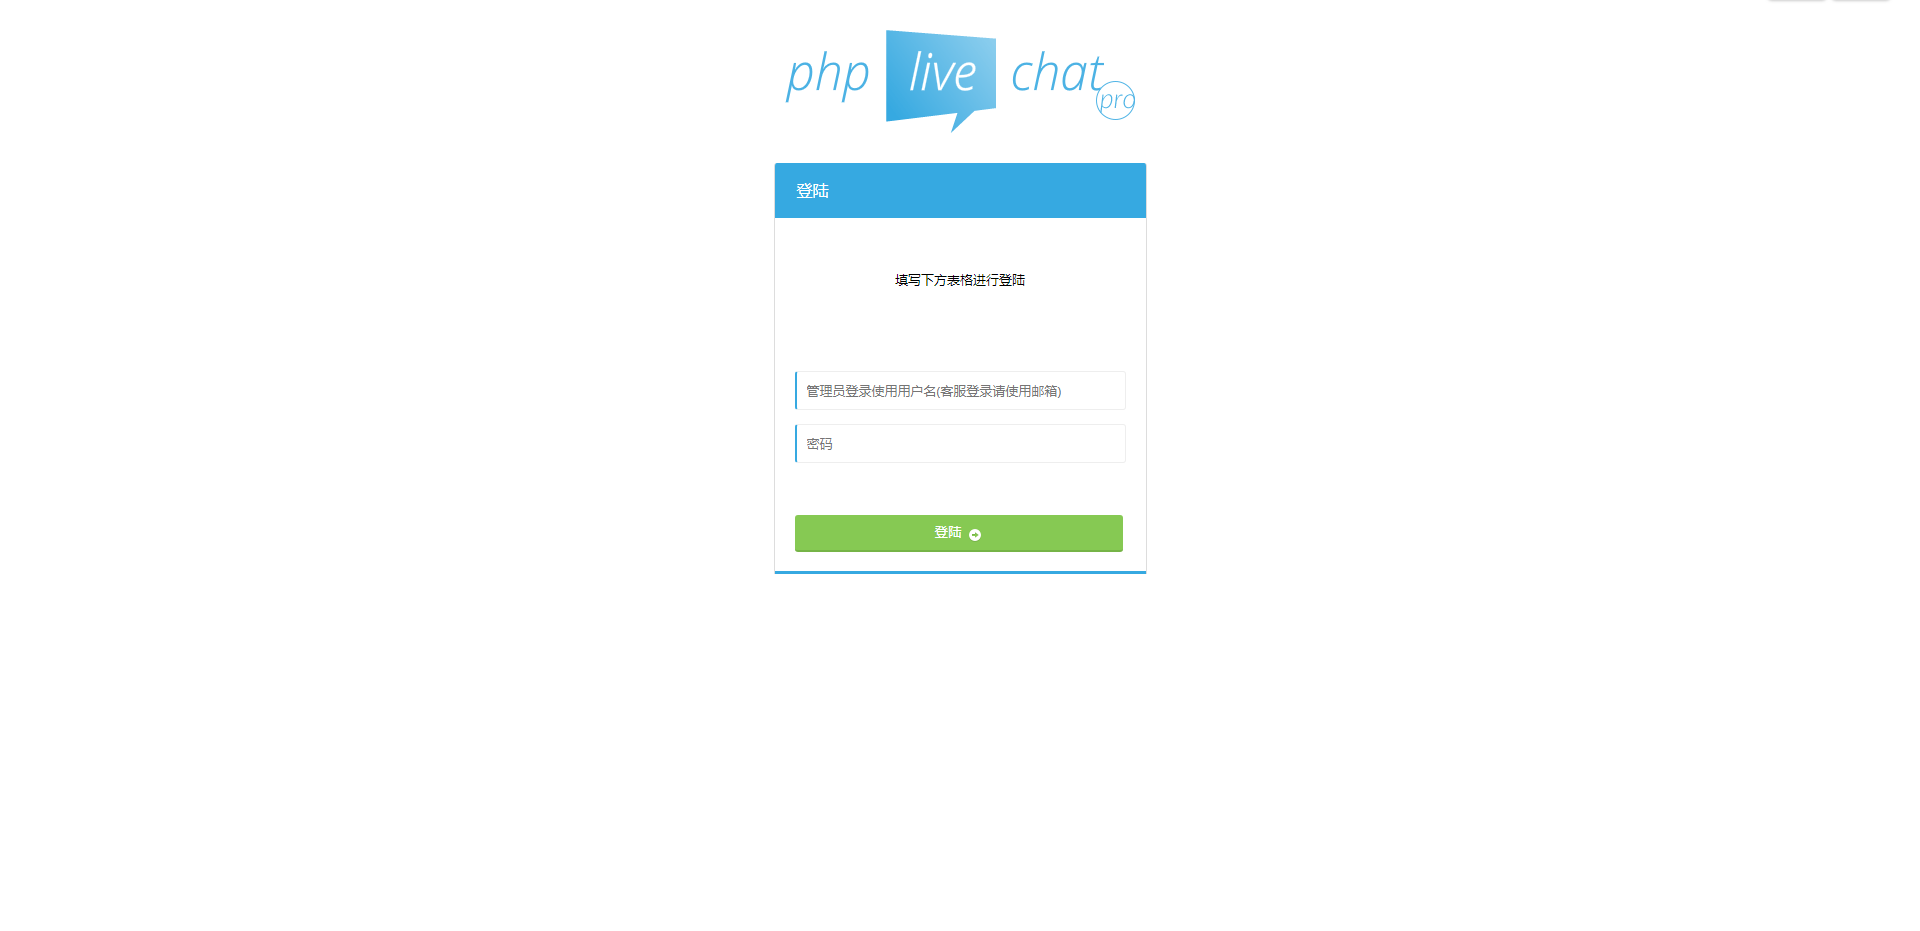 PHP多坐席客服聊天系统源码定制版 | 含原生APP及视频教程|鲸宜居资源网